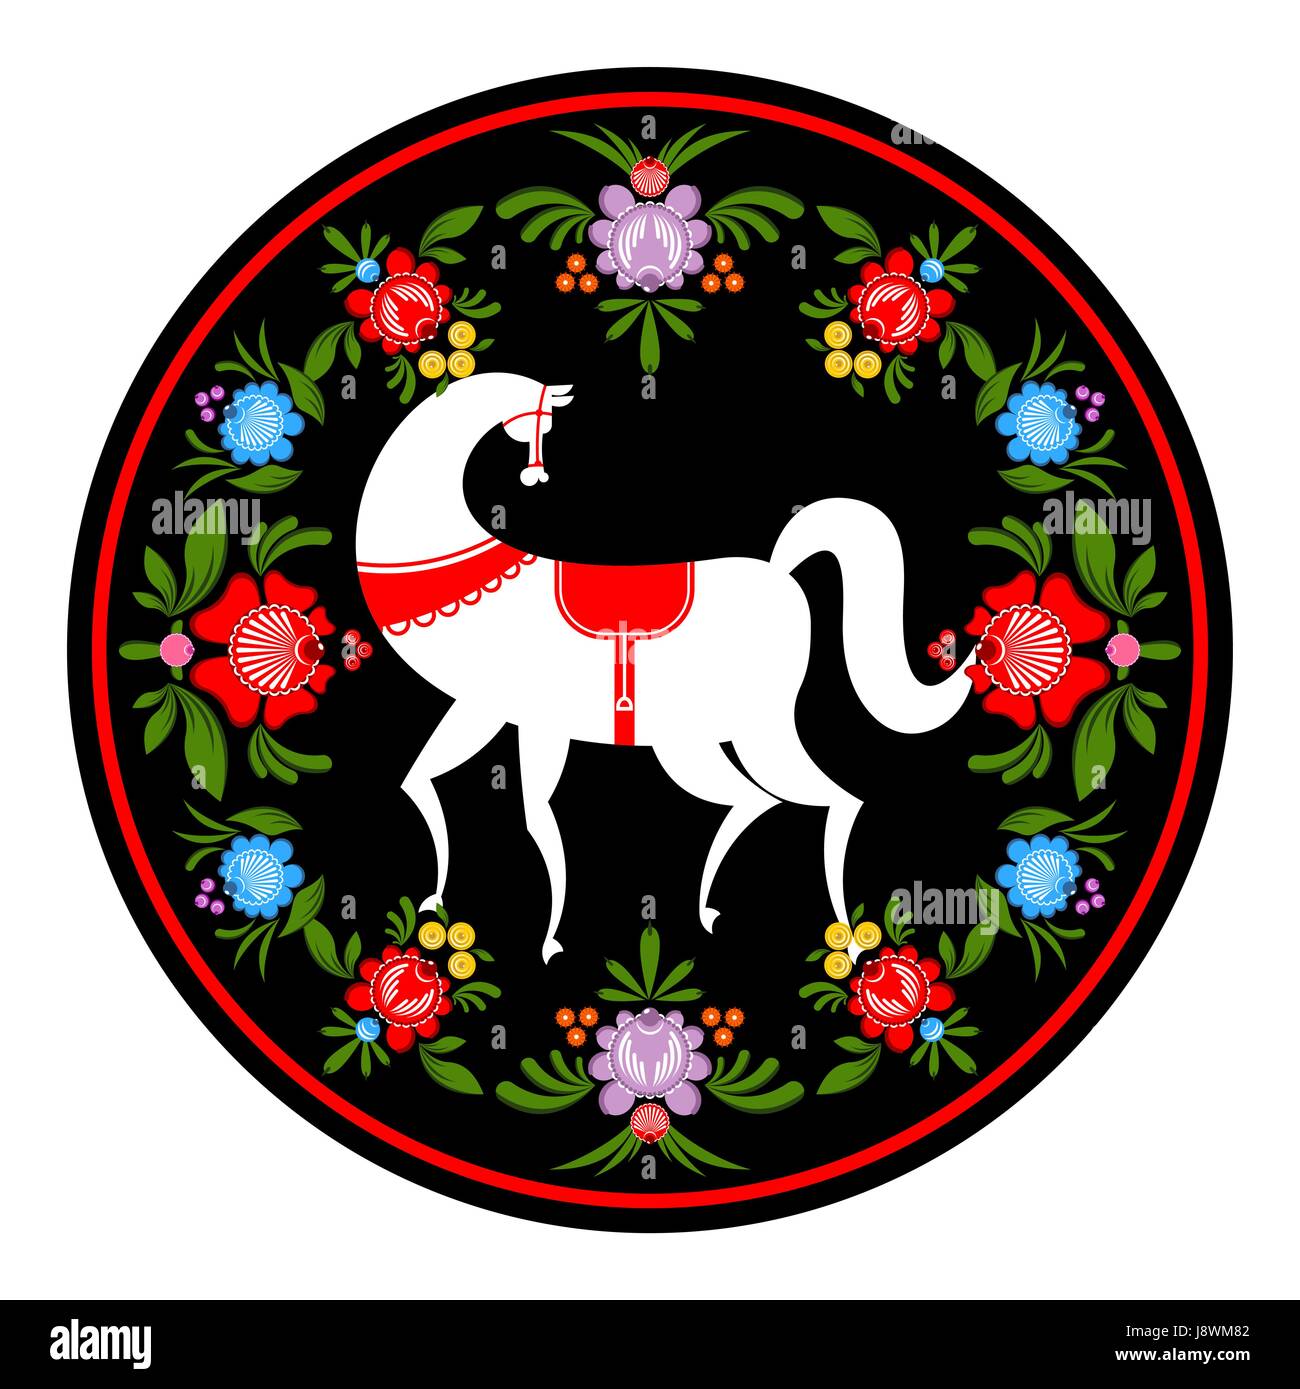 Белый конь Городецкой росписи в цветах